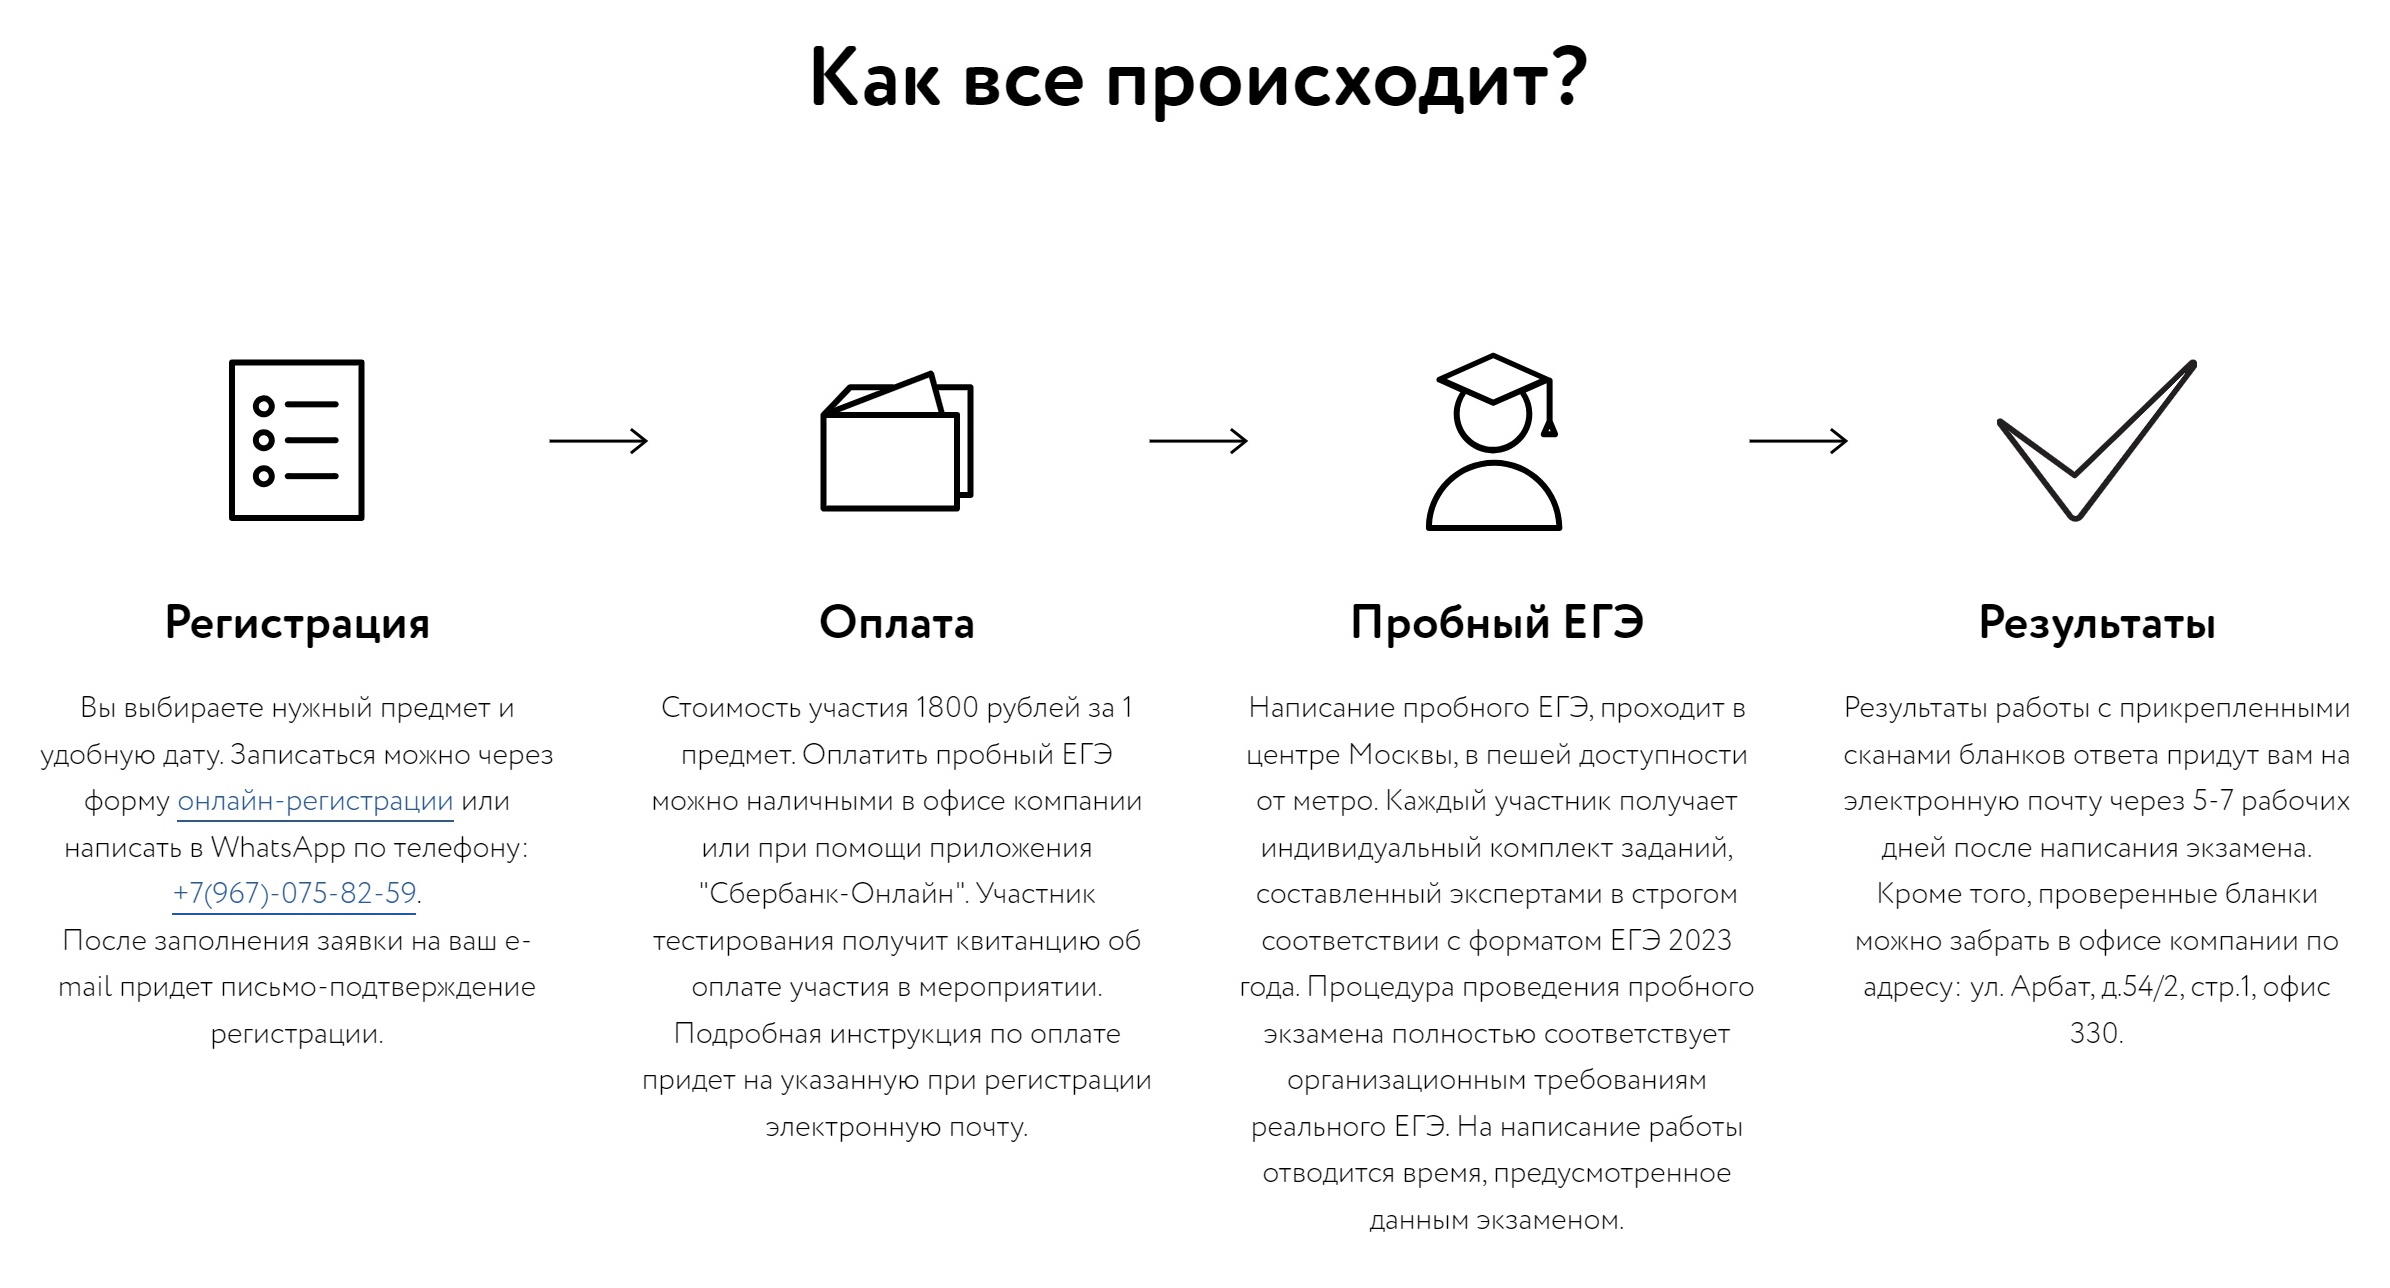 Как работают коммерческие центры по подготовке к ЕГЭ. Источник: ege⁠-⁠sfera.ru